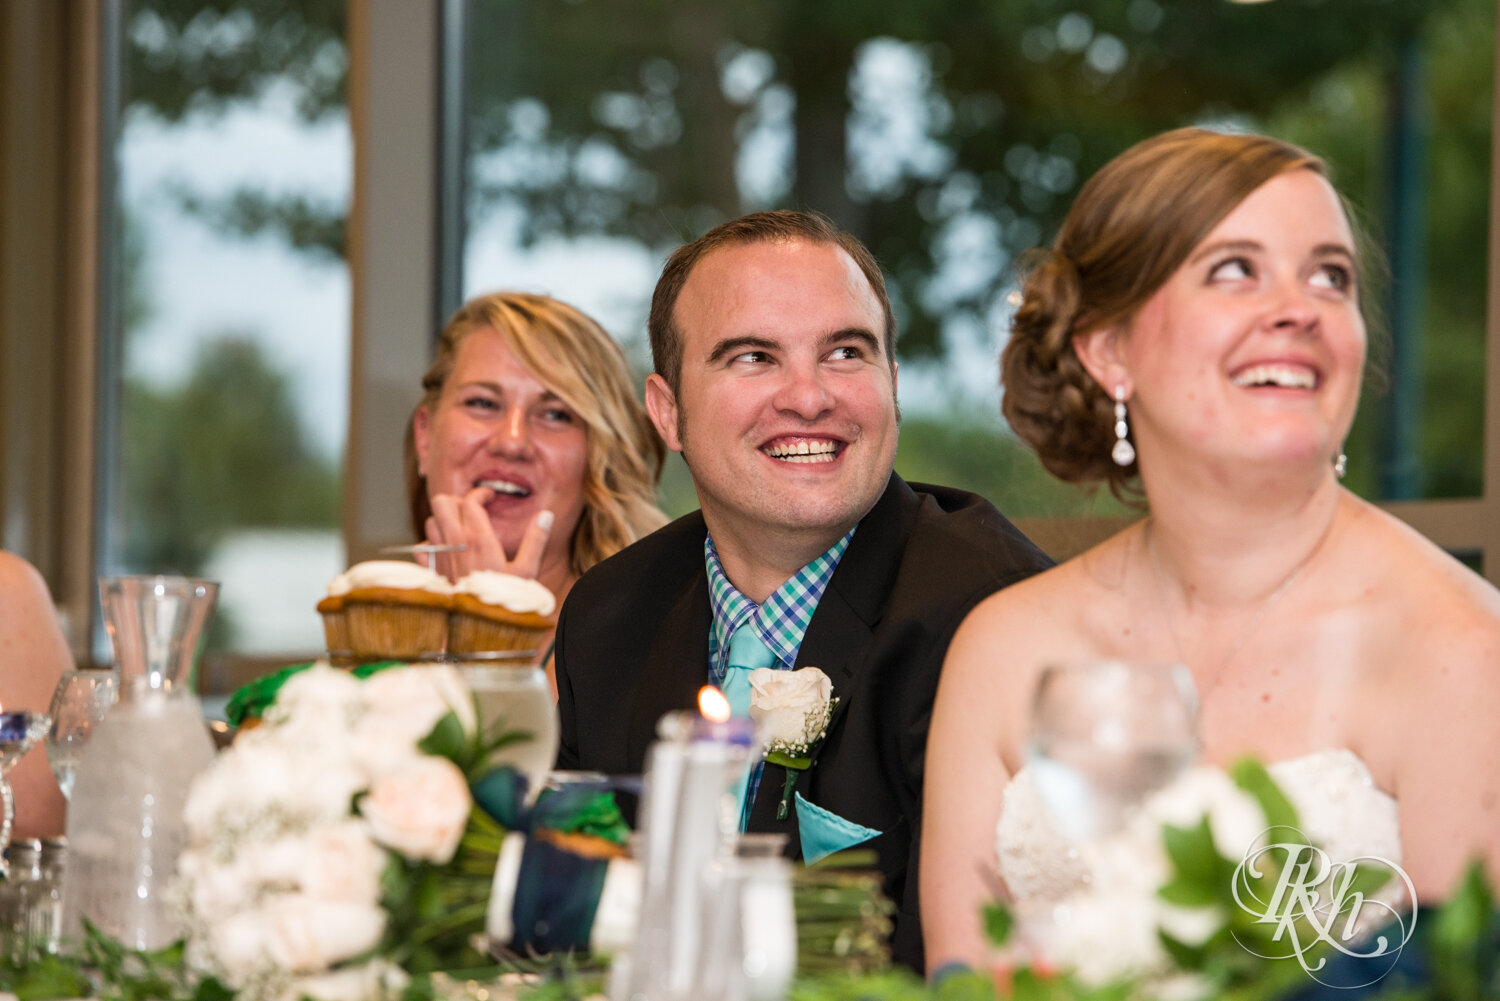 Groom laughs during speech at wedding reception at Eagan Community Center in Eagan, Minnesota.